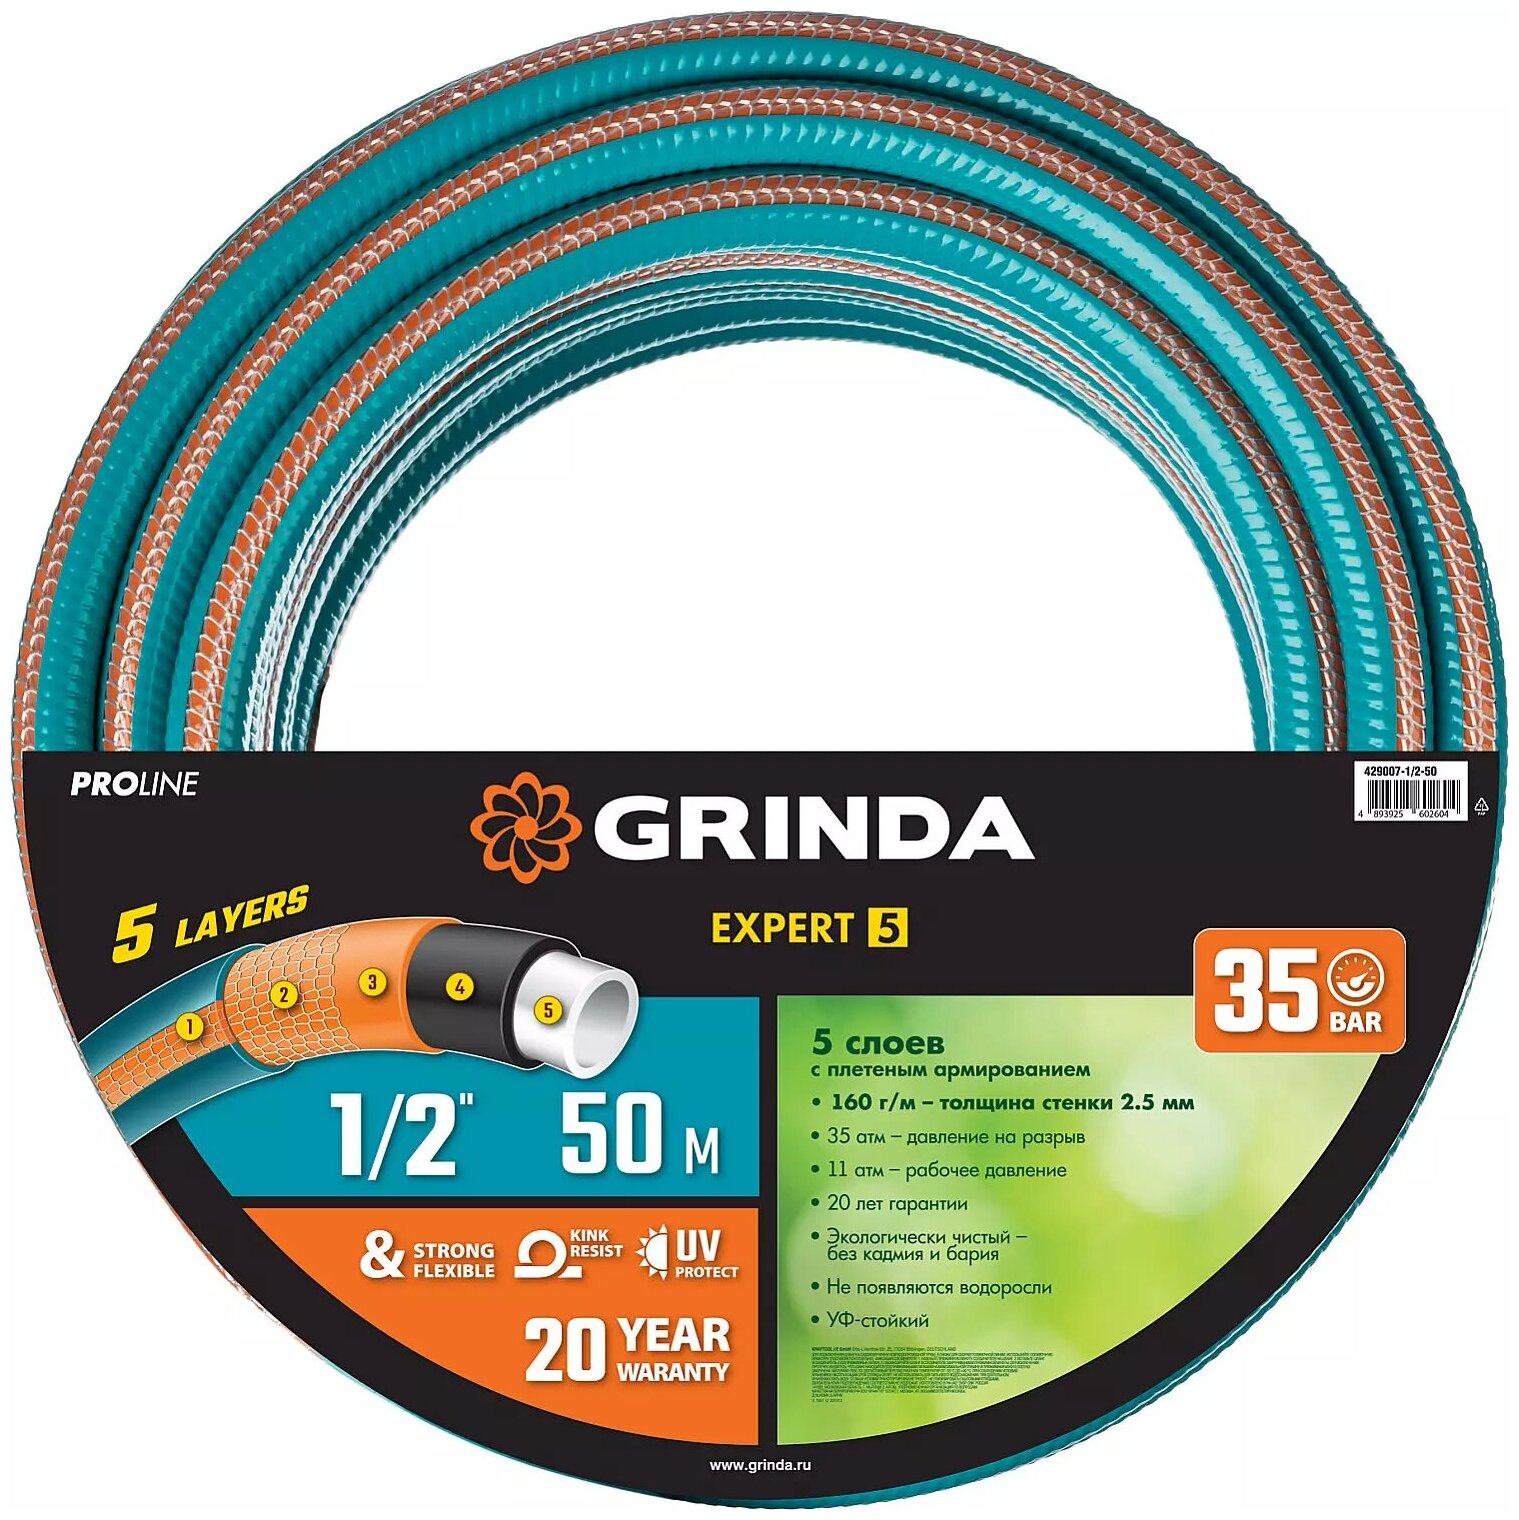 Поливочный шланг GRINDA PROLine Expert 5 1/2", 50 м, 35 атм, пятислойный, армированный 429007-1/2-50